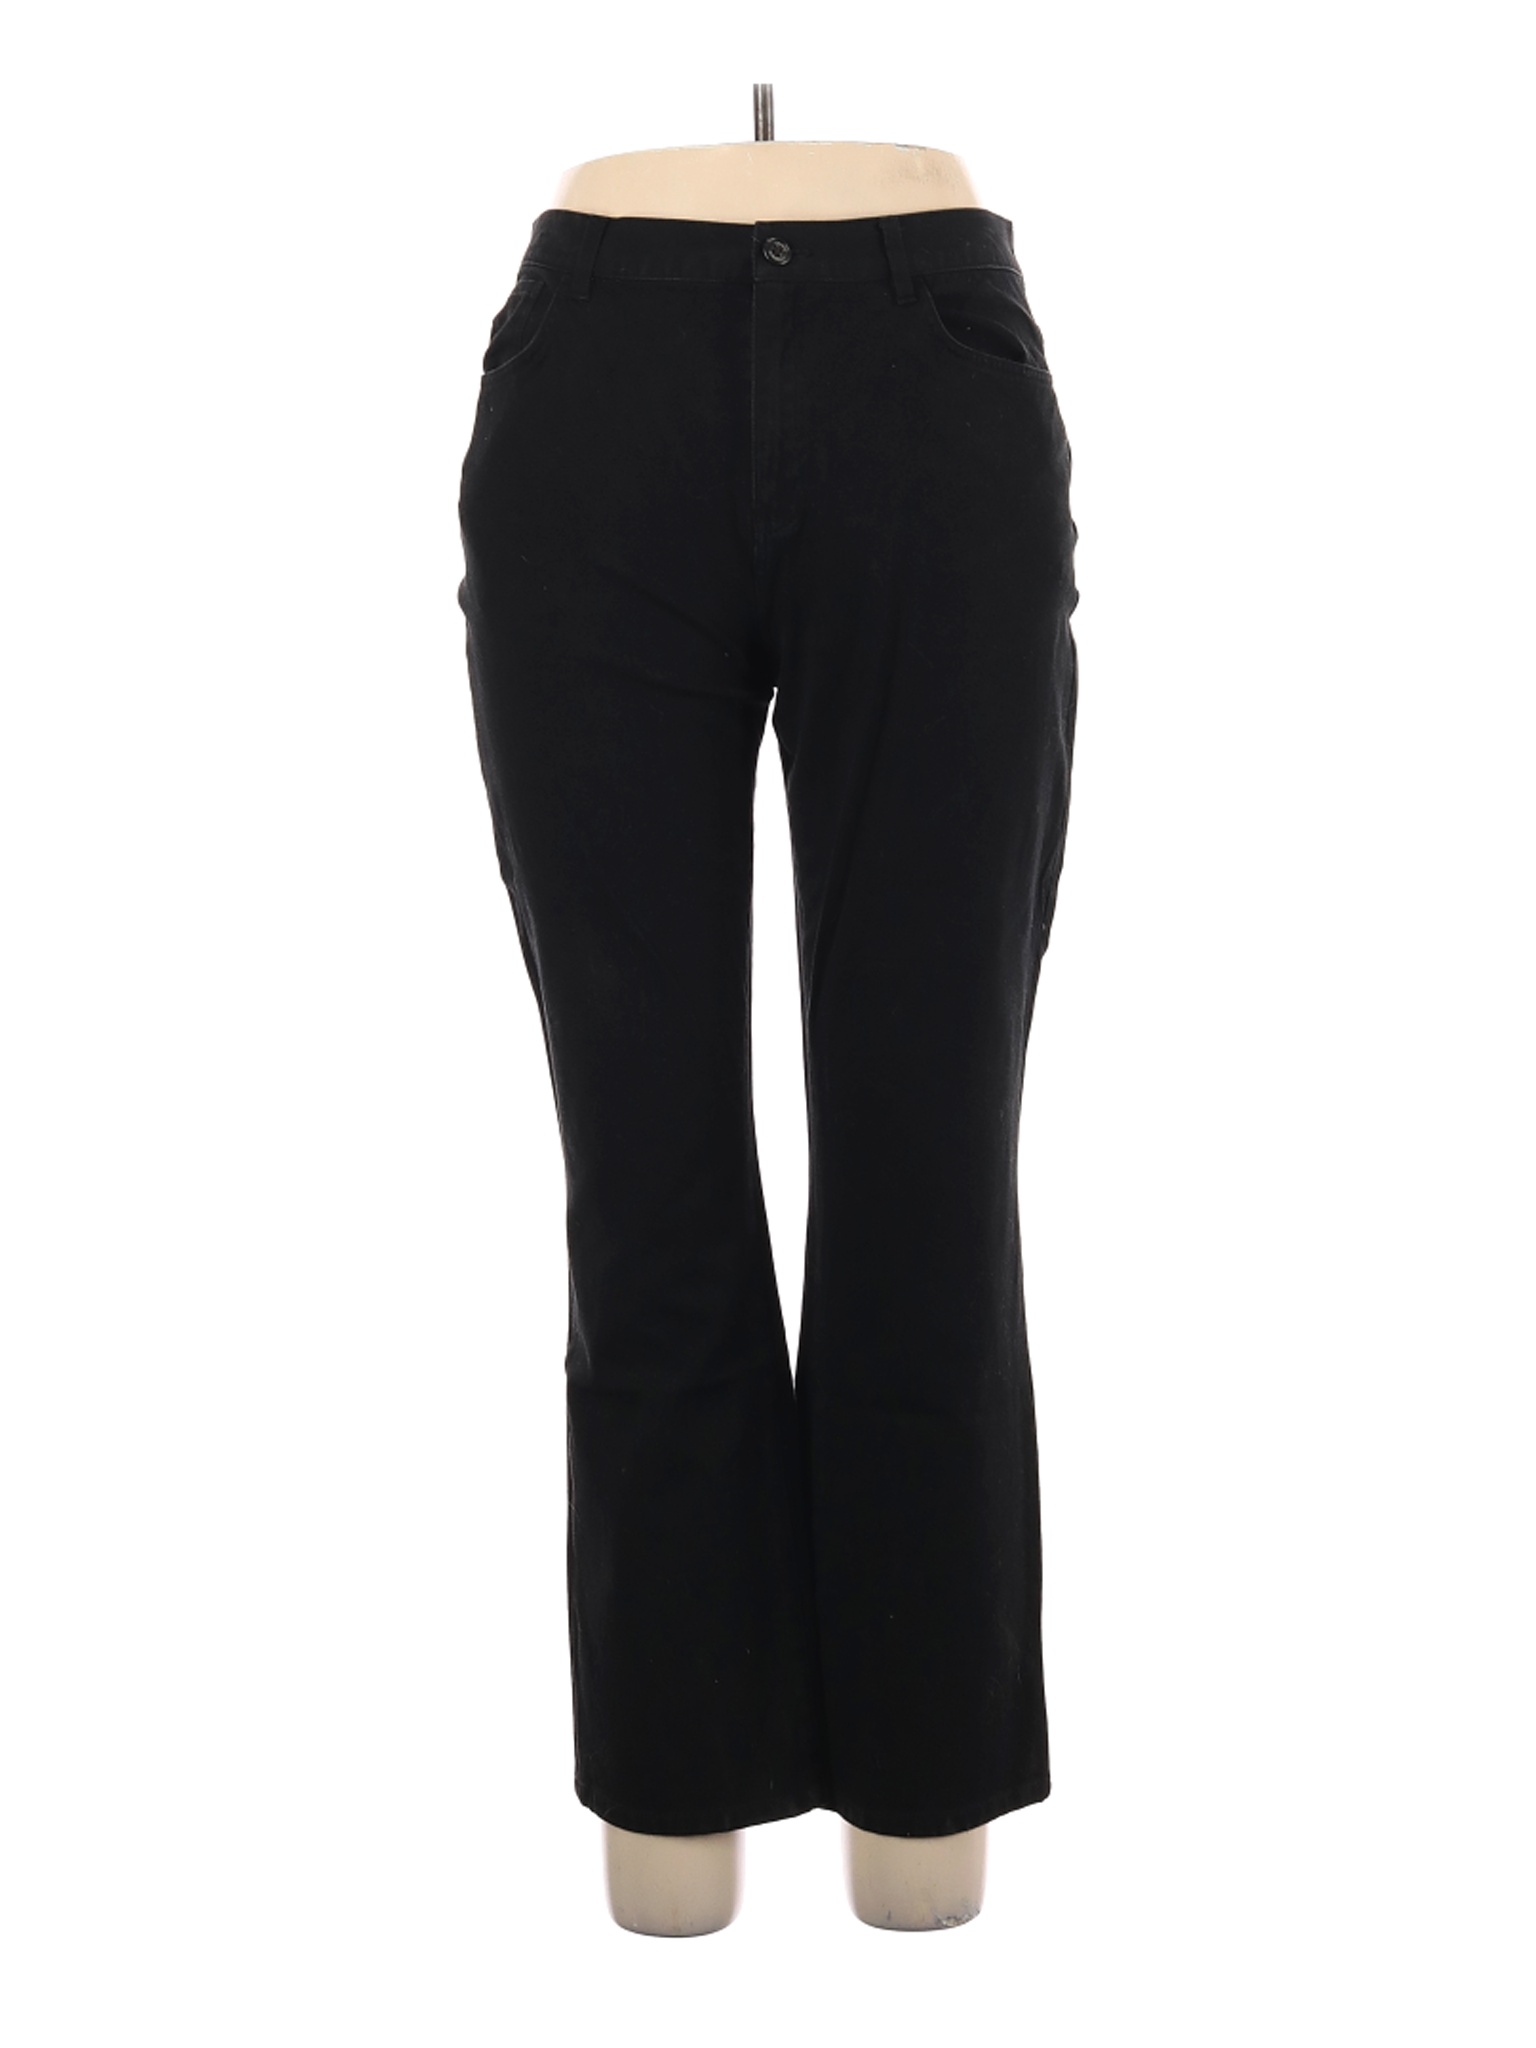 Chaps Women Black Jeans 12 | eBay